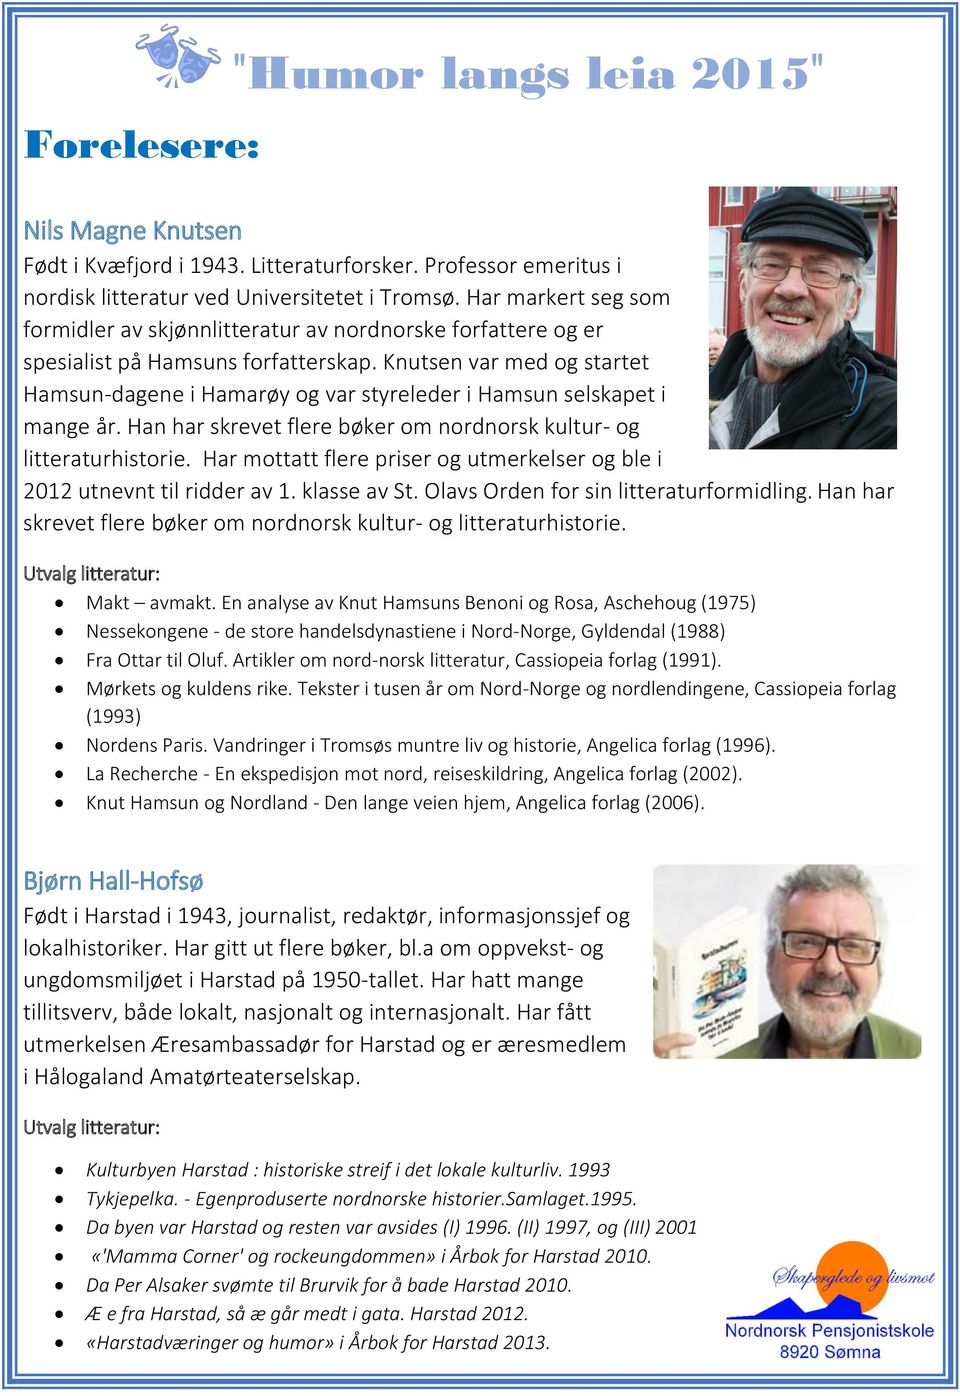 Knutsen var med og startet Hamsun-dagene i Hamarøy og var styreleder i Hamsun selskapet i mange år. Han har skrevet flere bøker om nordnorsk kultur- og litteraturhistorie.